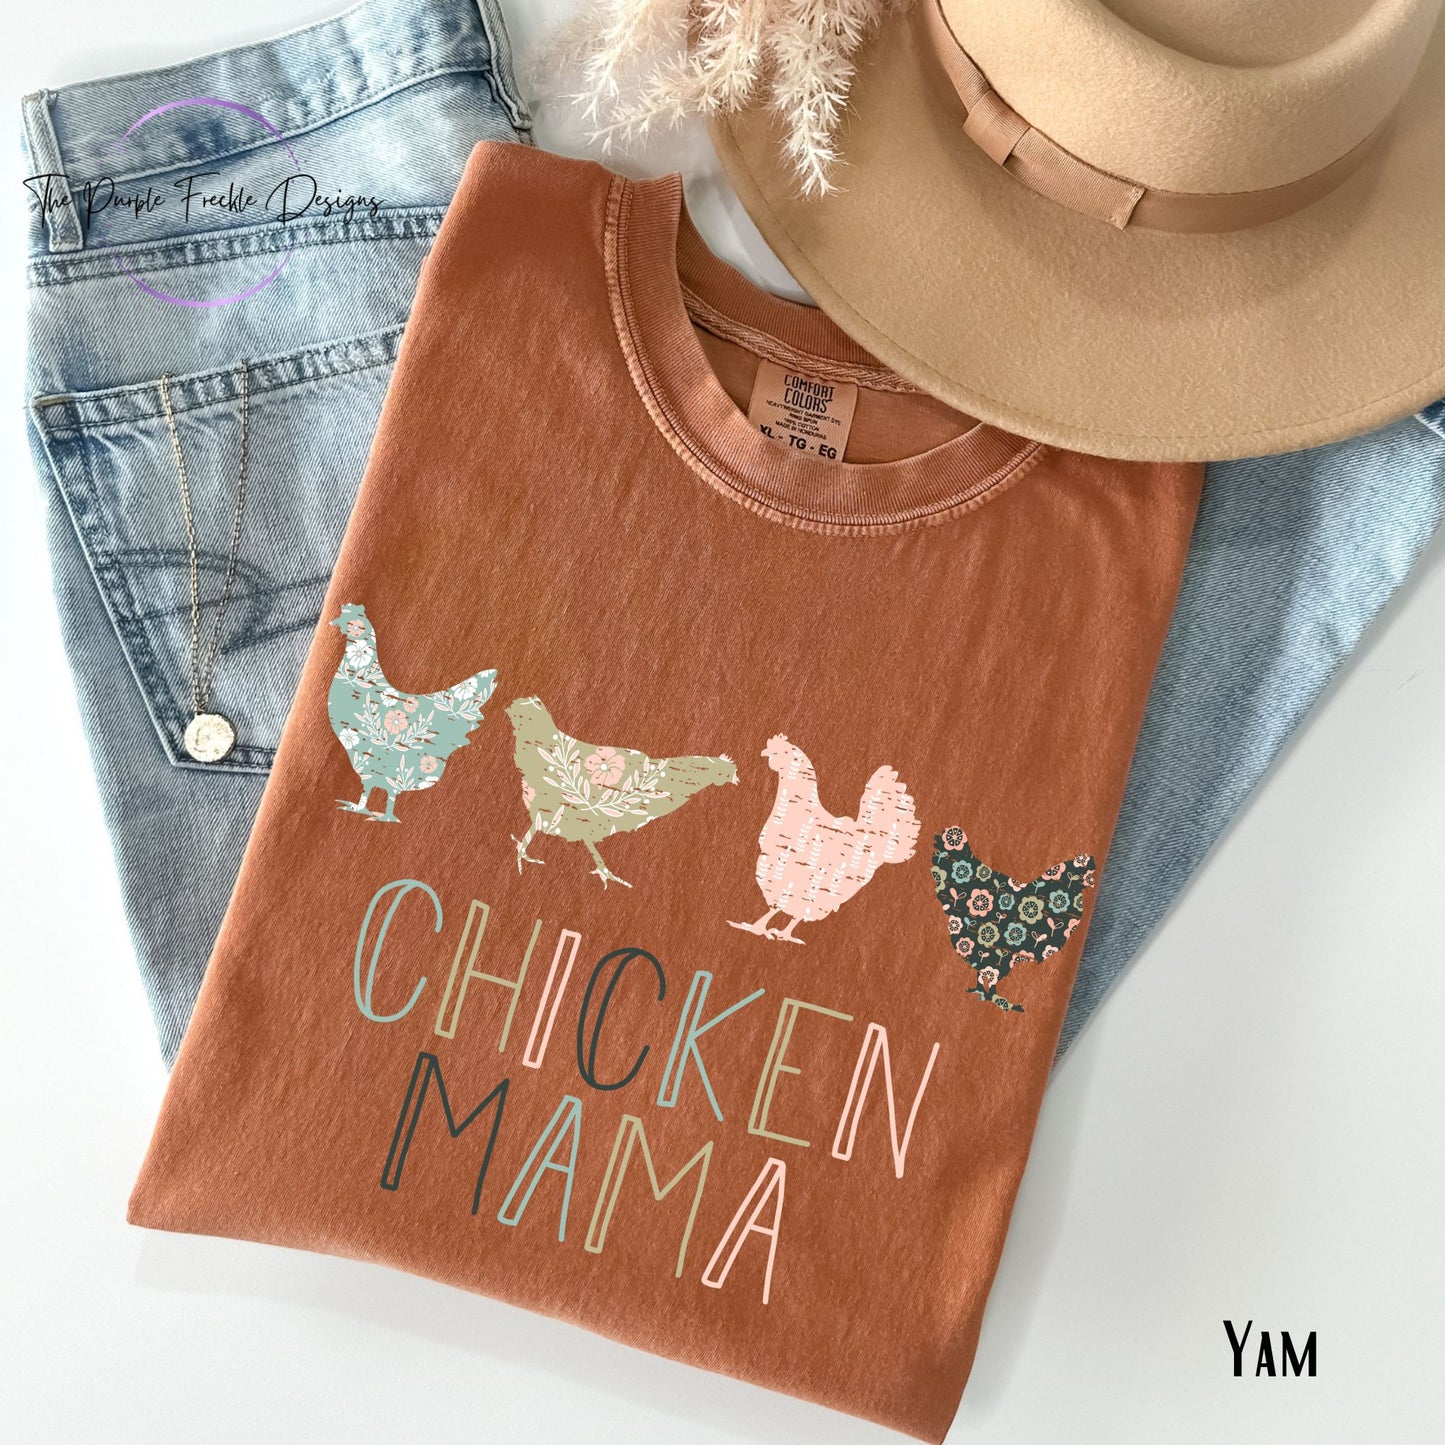 Chicken Mama